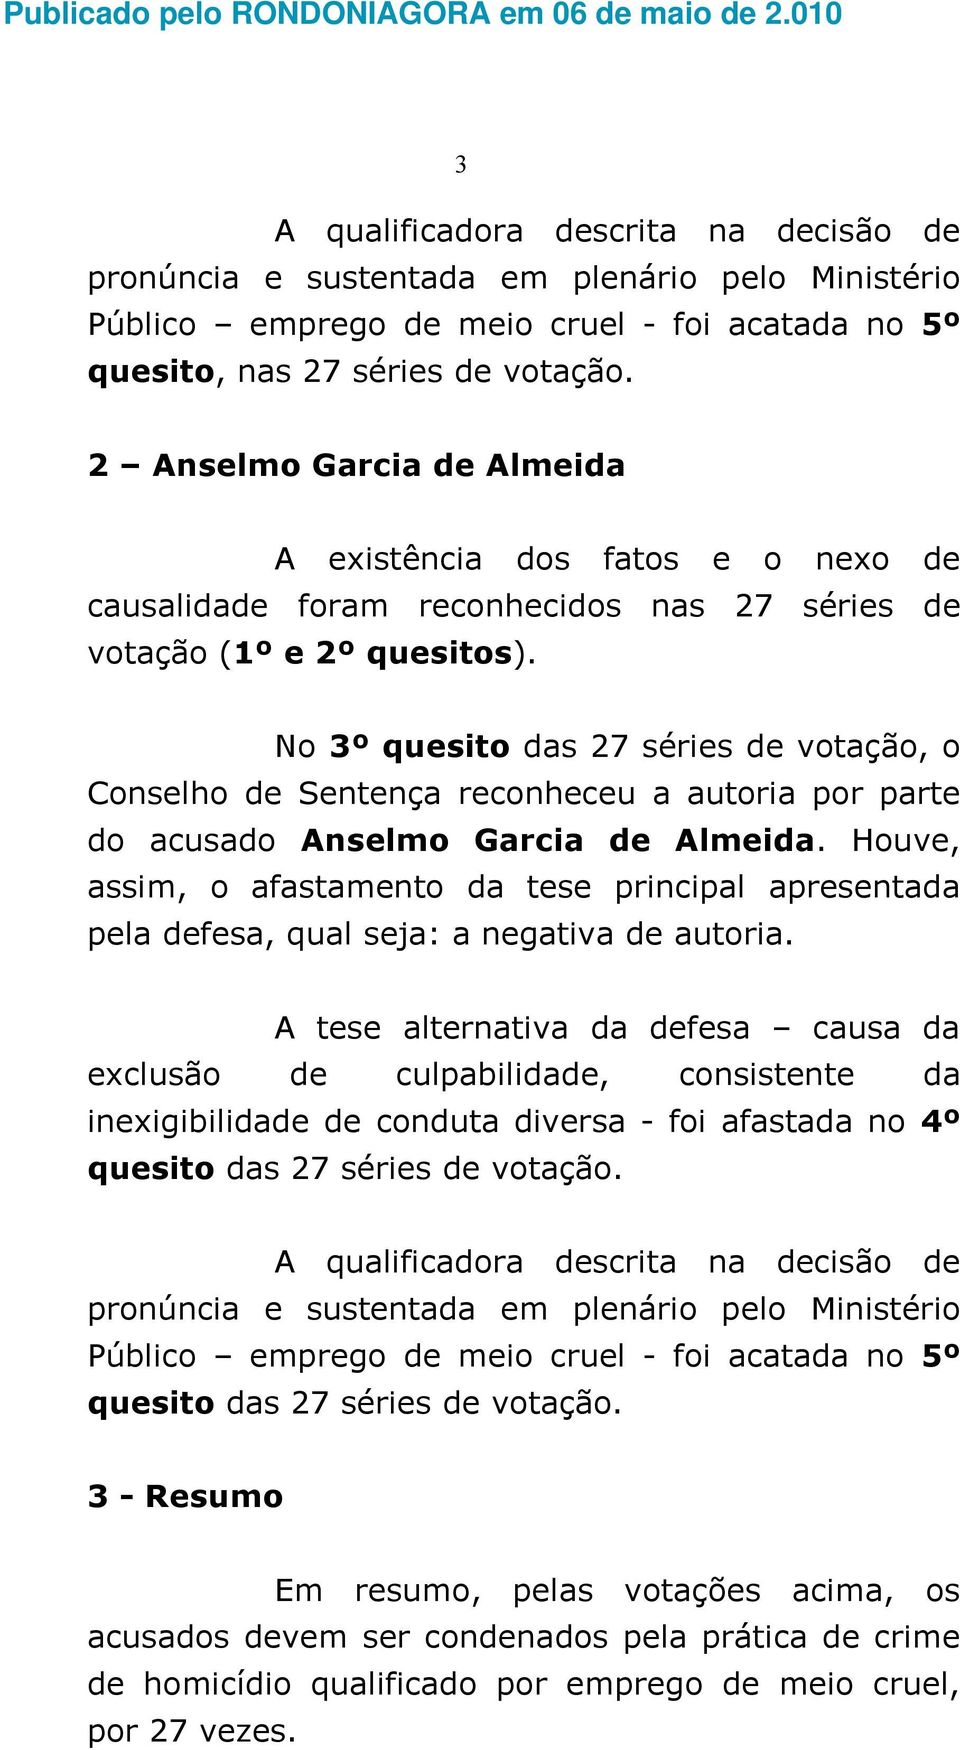 No 3º quesito das 27 séries de votação, o Conselho de Sentença reconheceu a autoria por parte do acusado Anselmo Garcia de Almeida.